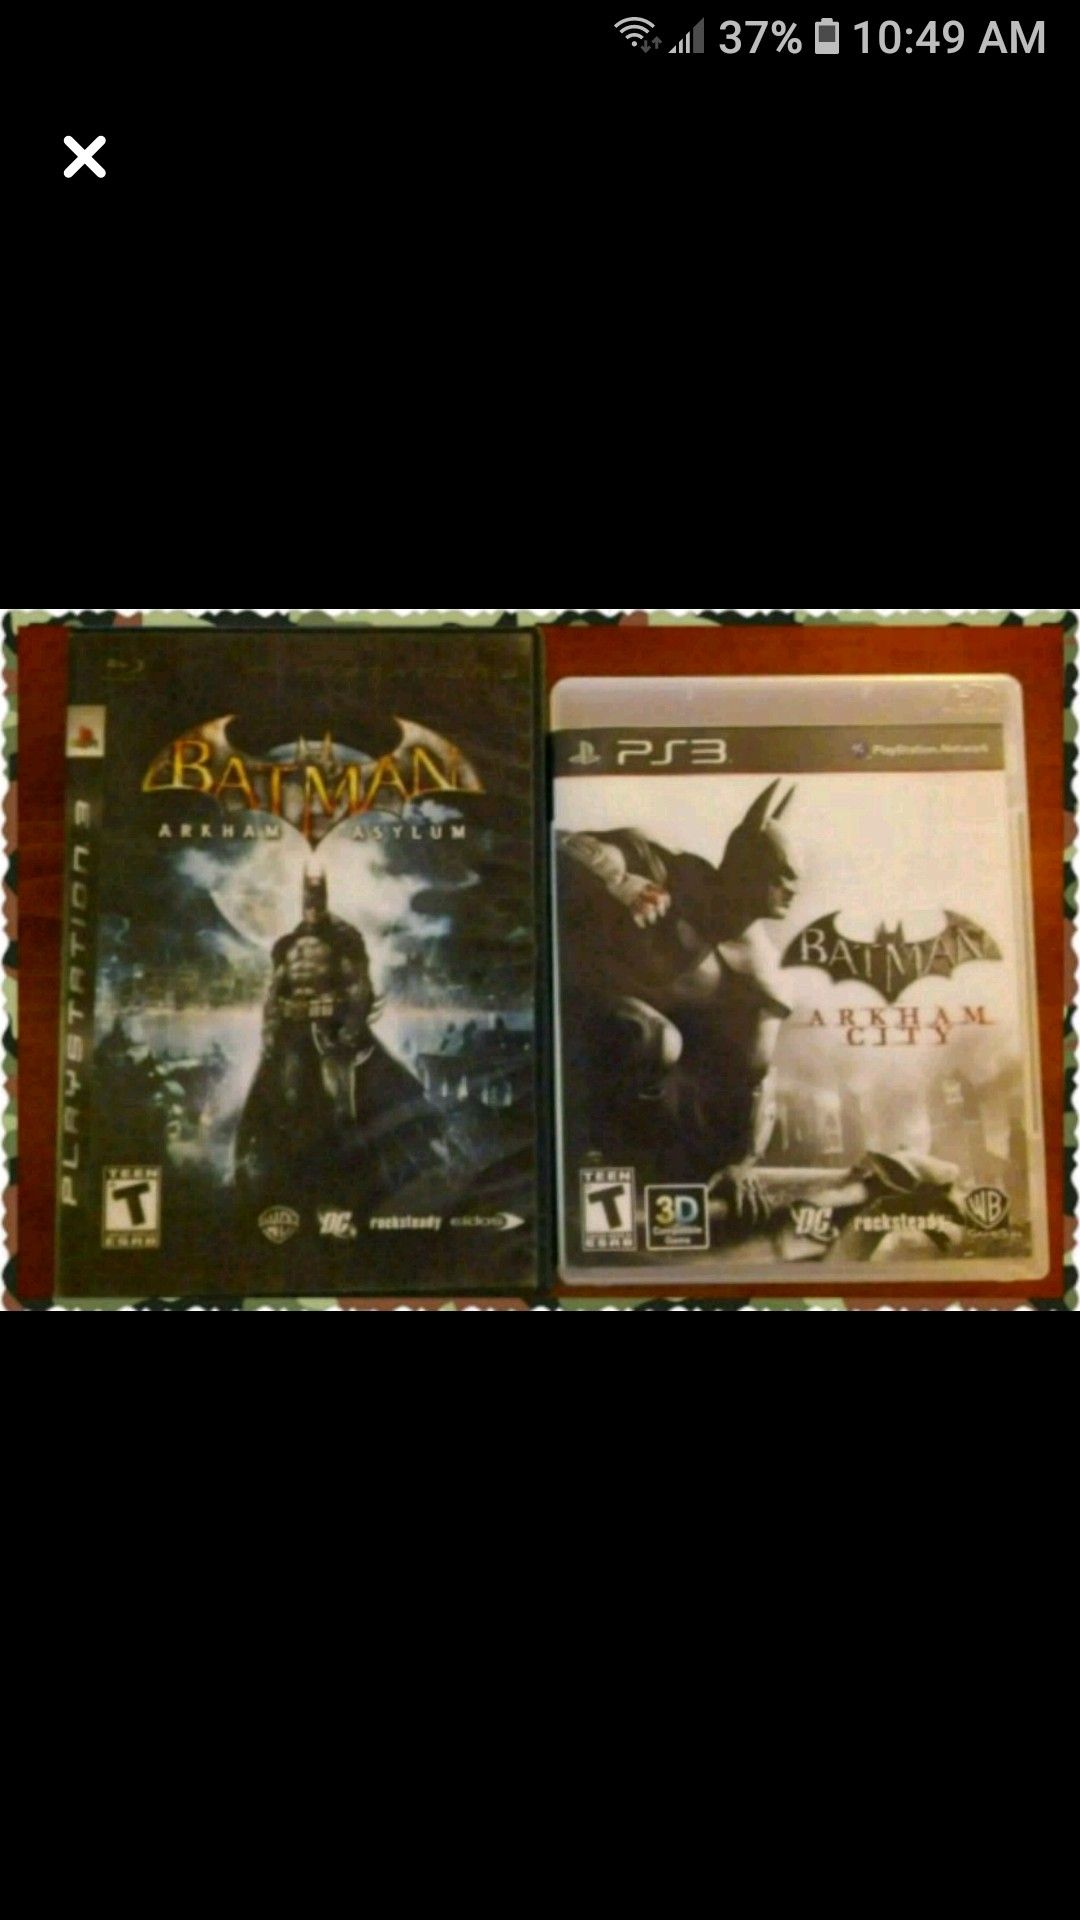 (2) Batman PS3 games